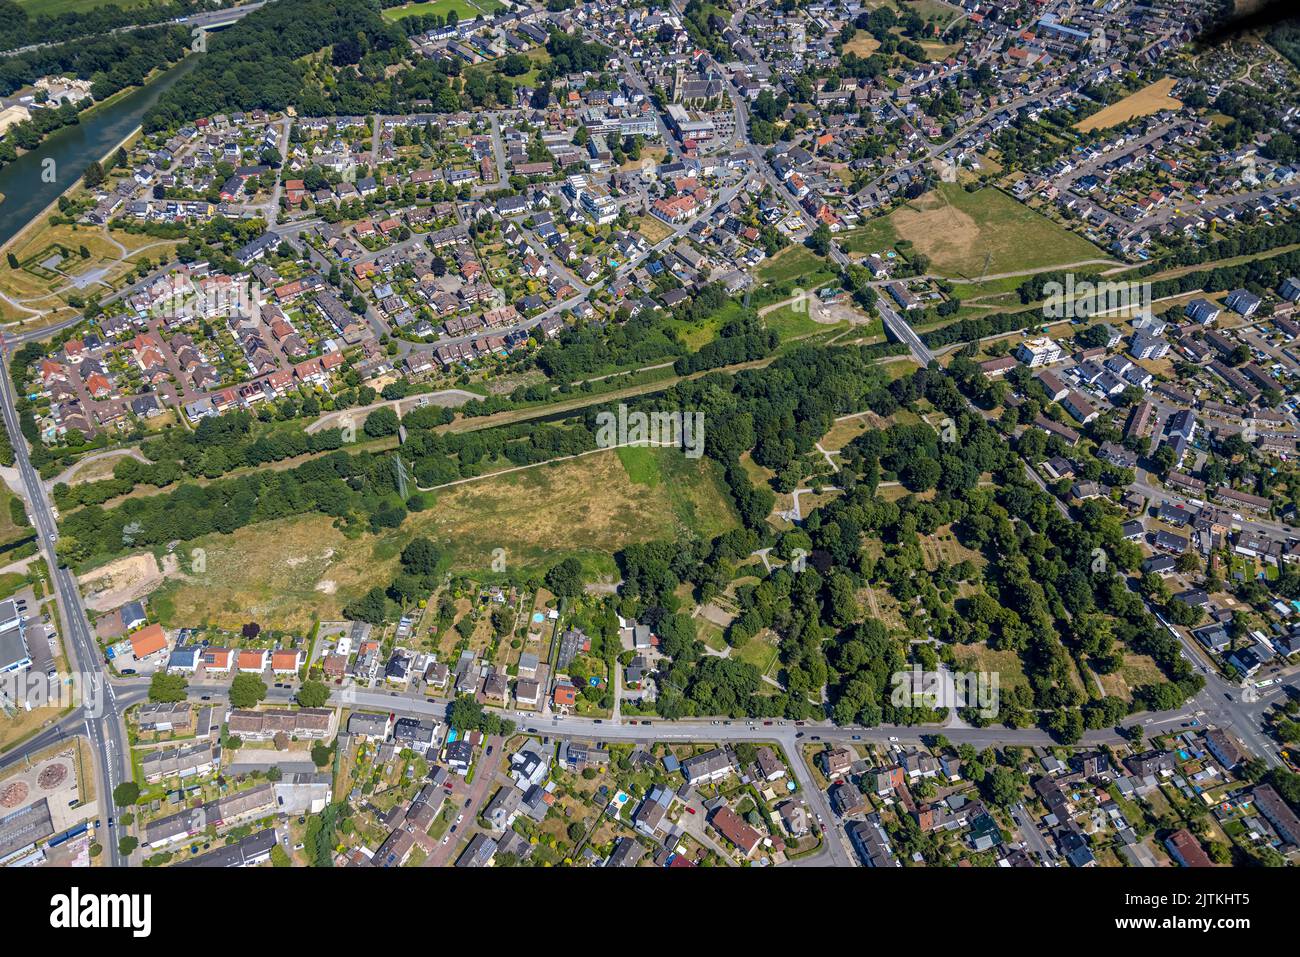 Aerial view, Planned construction area Am Emscherufer, Alte Eiche, Heerstraße, Habinghorst, Castrop-Rauxel, Ruhr area, North Rhine-Westphalia, Germany Stock Photo